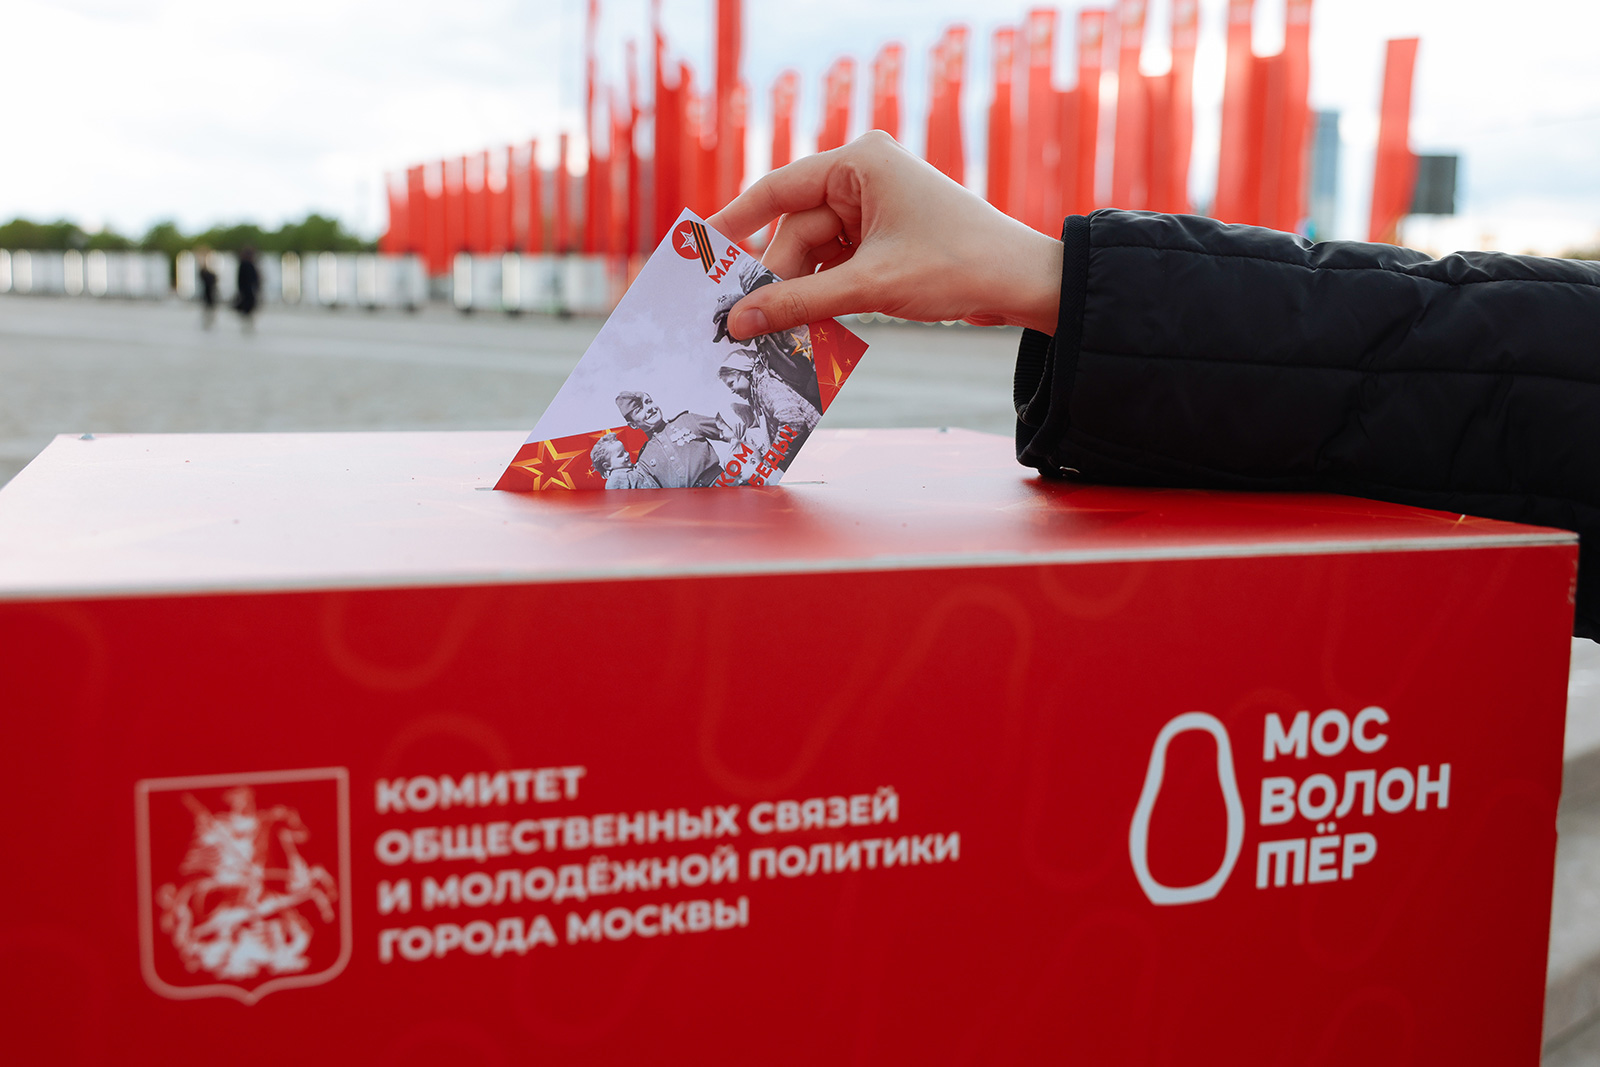 Подписать открытку можно было на 14 площадках. Фото: сайт мэра Москвы